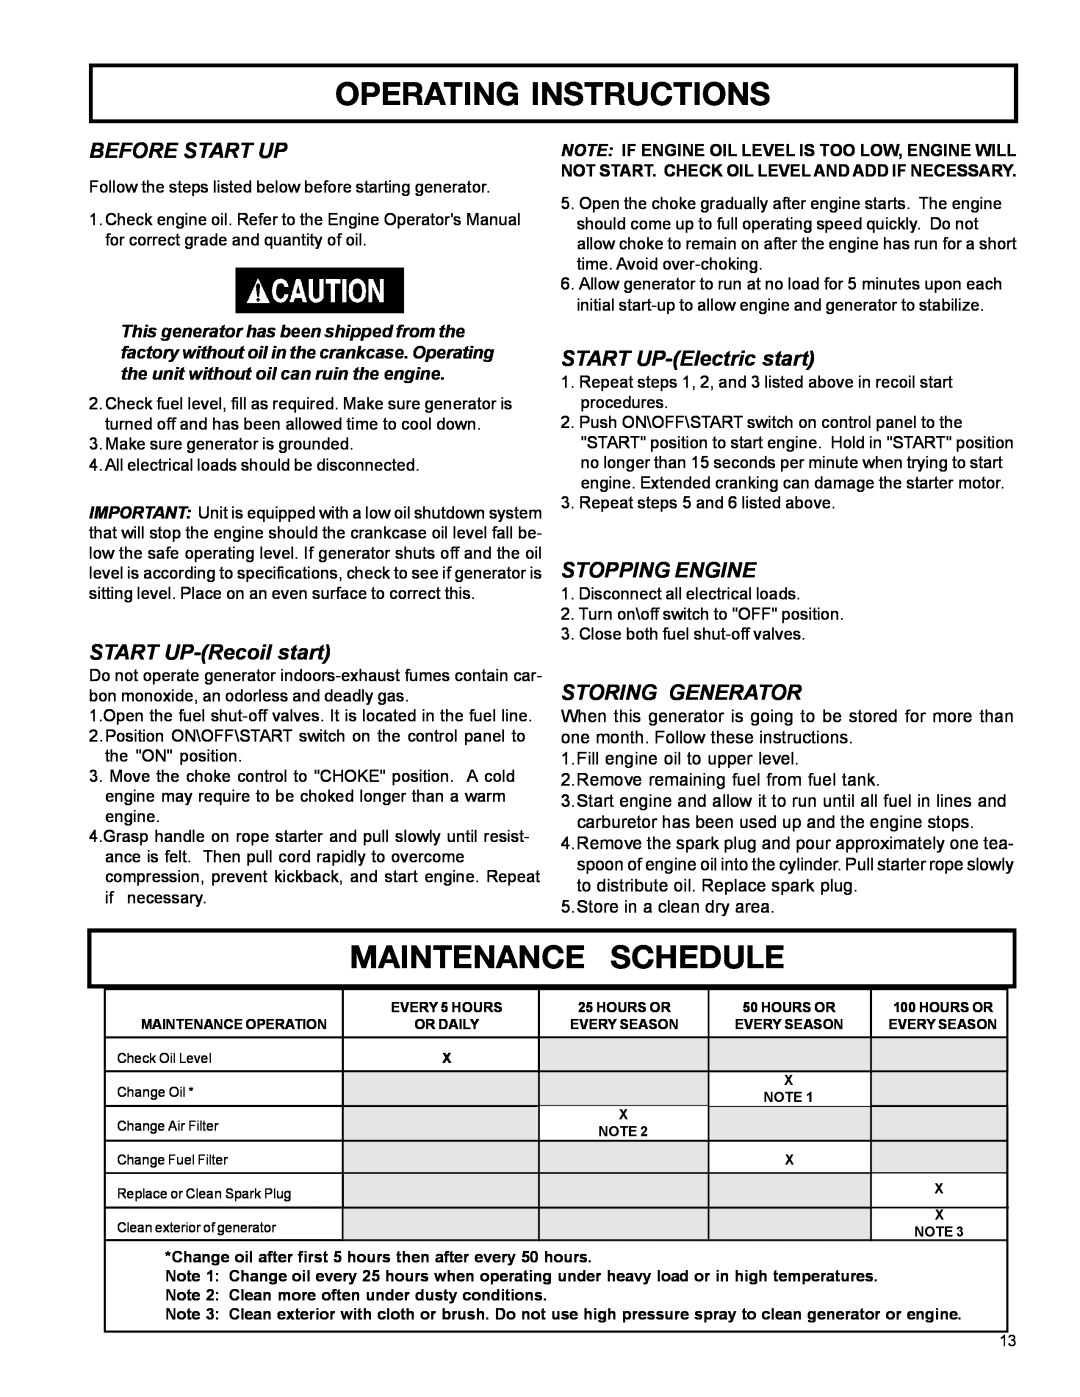 DeVillbiss Air Power Company MGP-4600 Operating Instructions, Maintenance Schedule, Before Start Up, START UP-Recoilstart 